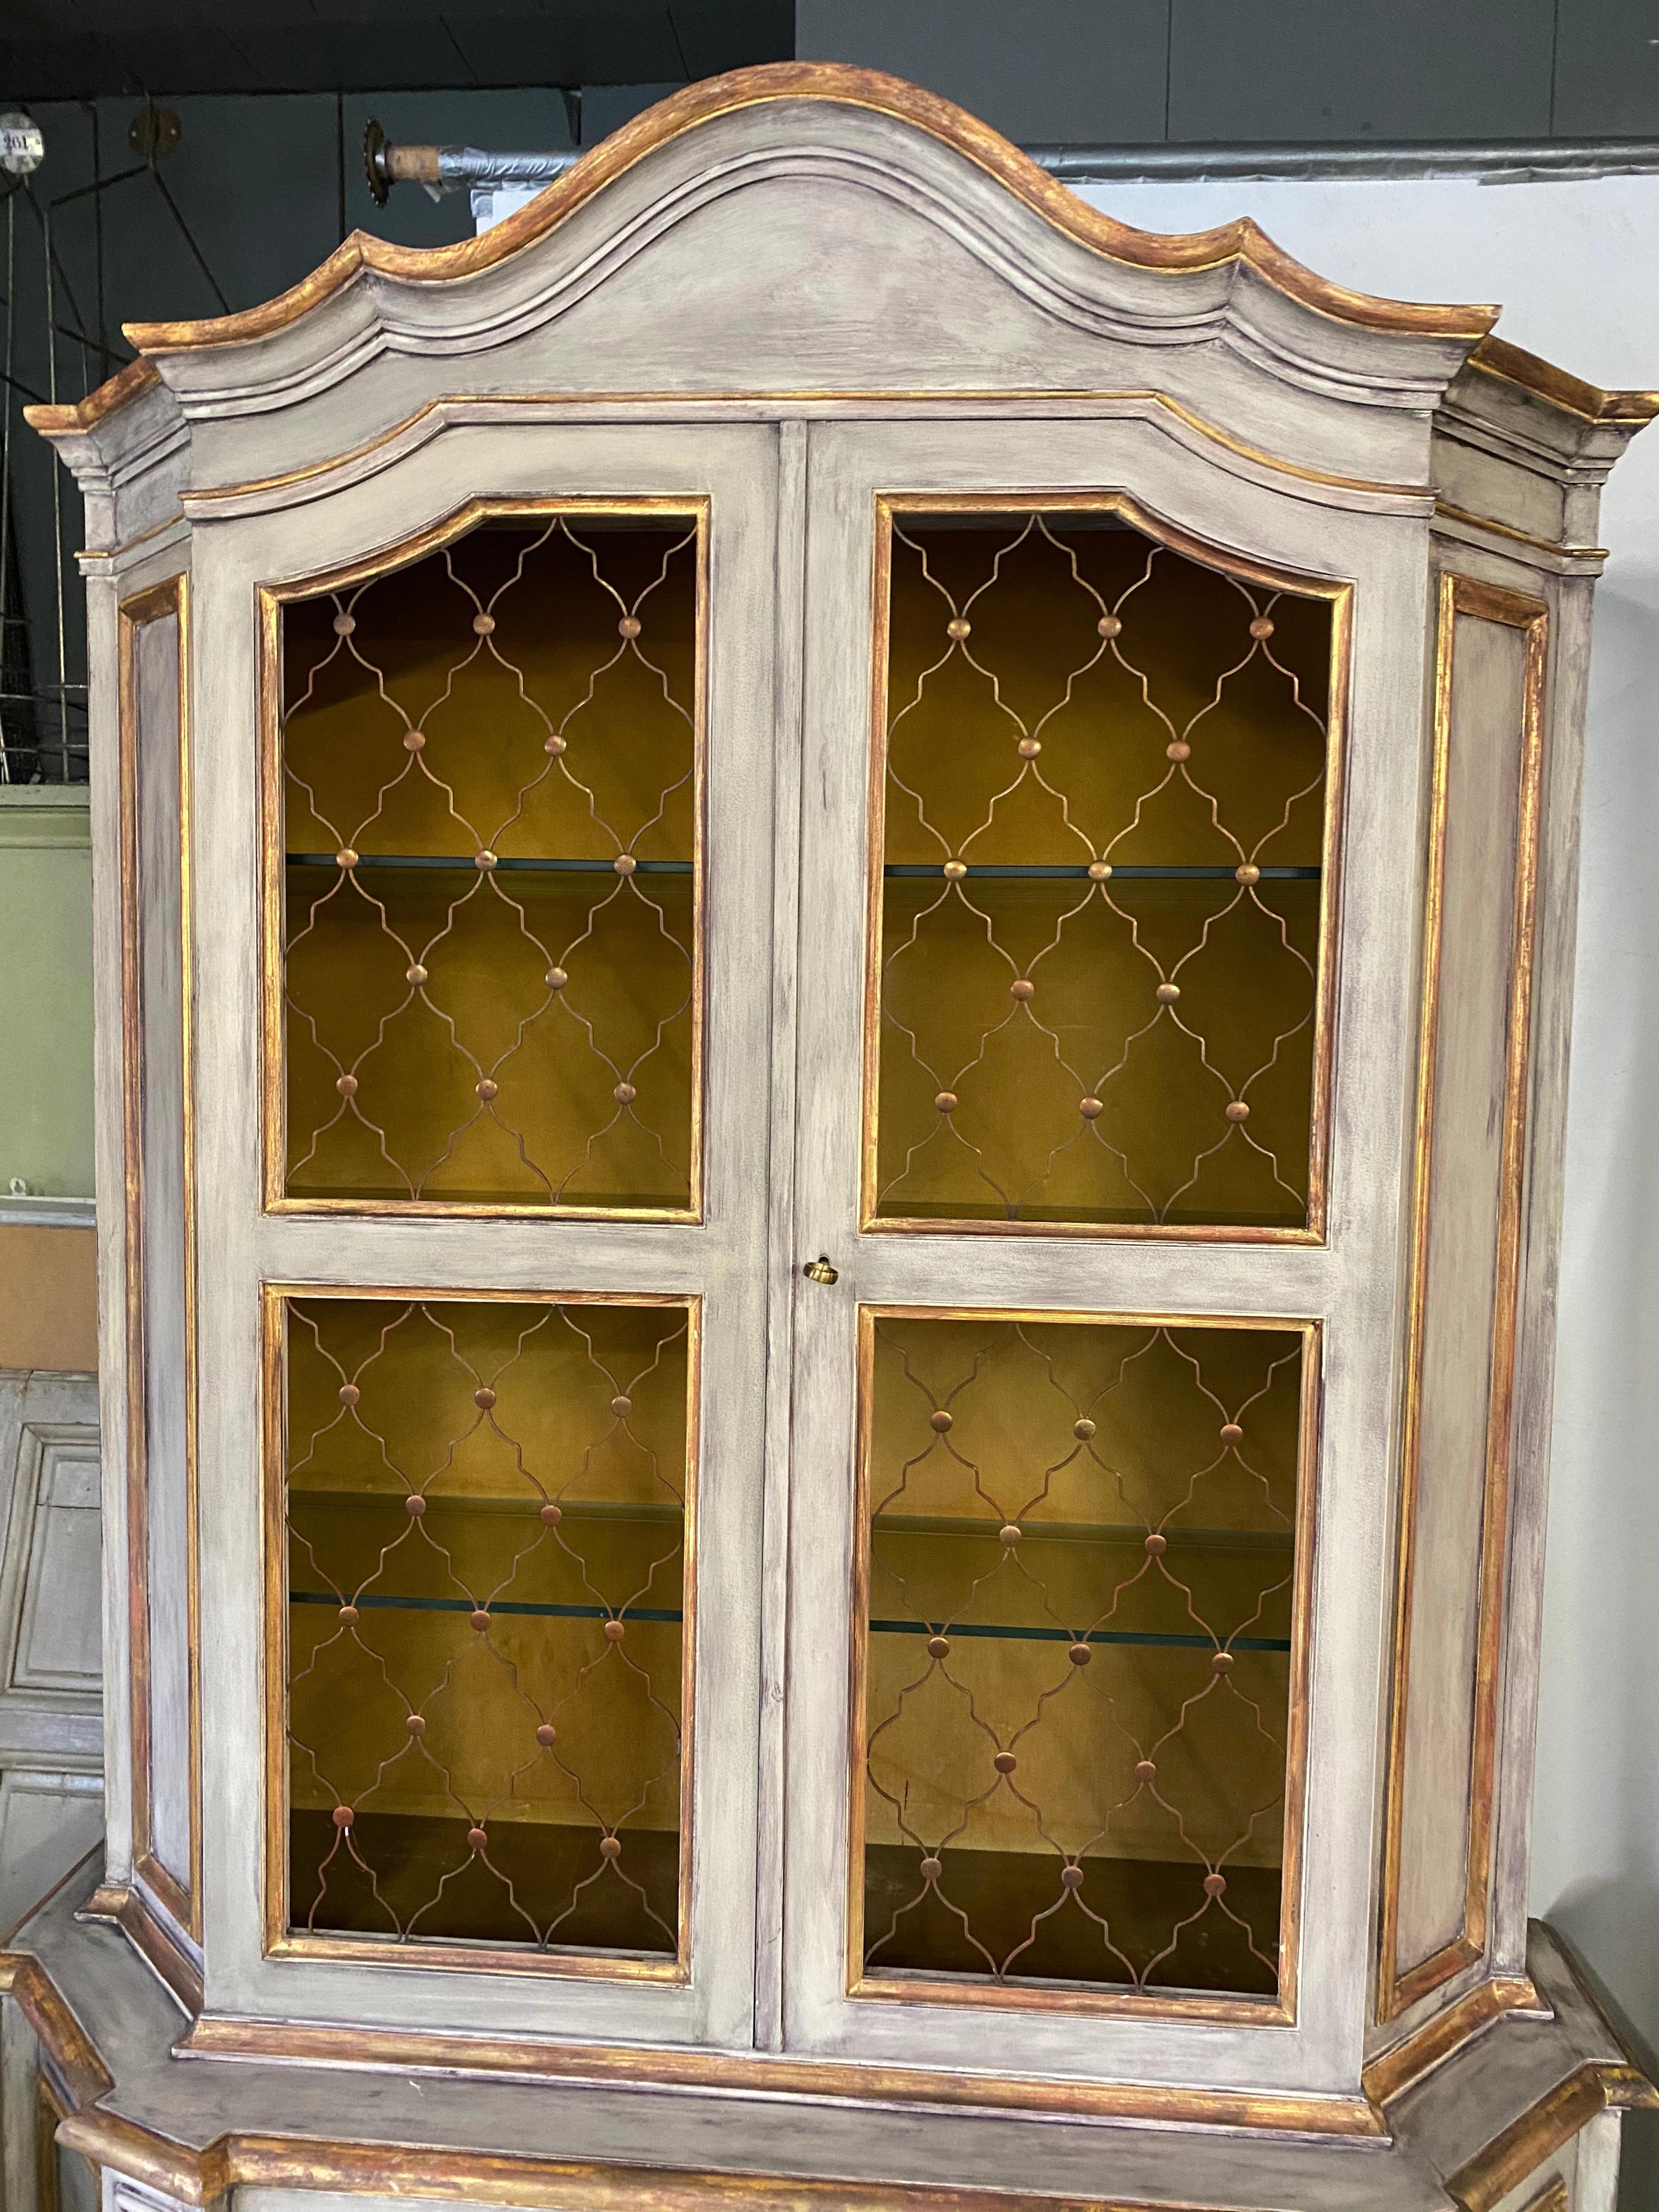 Die Schränke im venezianischen Stil haben vier (drei gläserne) offene Einlegeböden hinter einem Paar Türen, die oben mit kupferfarbenen Blenden verkleidet sind, und zwei Einlegeböden unten hinter massiven vertäfelten Türen. Das Giebelfeld ist im